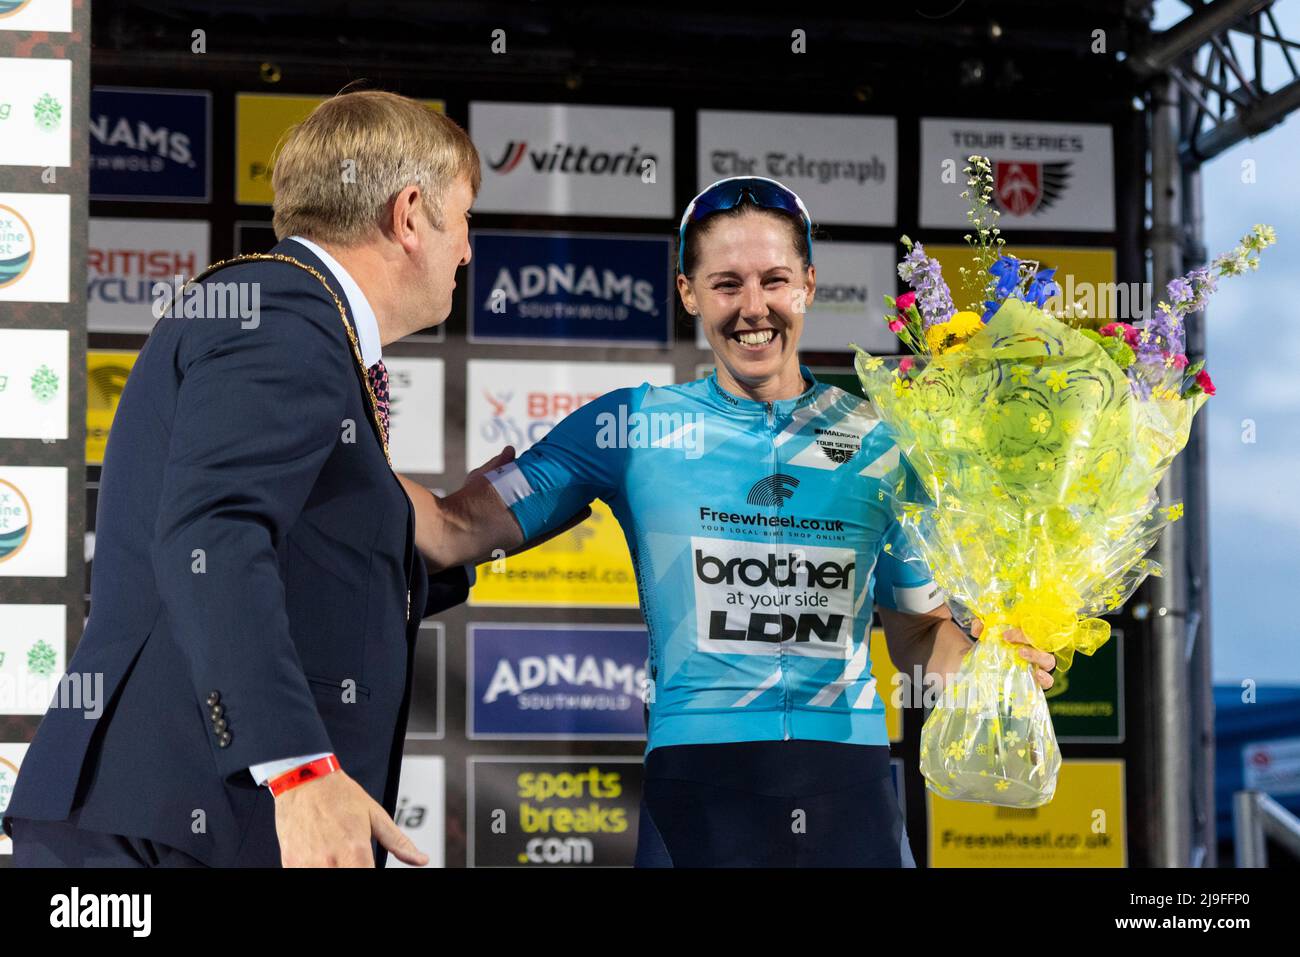 Sammie Stuart, de LDN Brother, ganador de la camiseta de sprints azules en la carrera de ciclismo Sportsbreaks Tour Series en la quinta ronda de Clacton on Sea, Essex, Reino Unido. Criterio Foto de stock